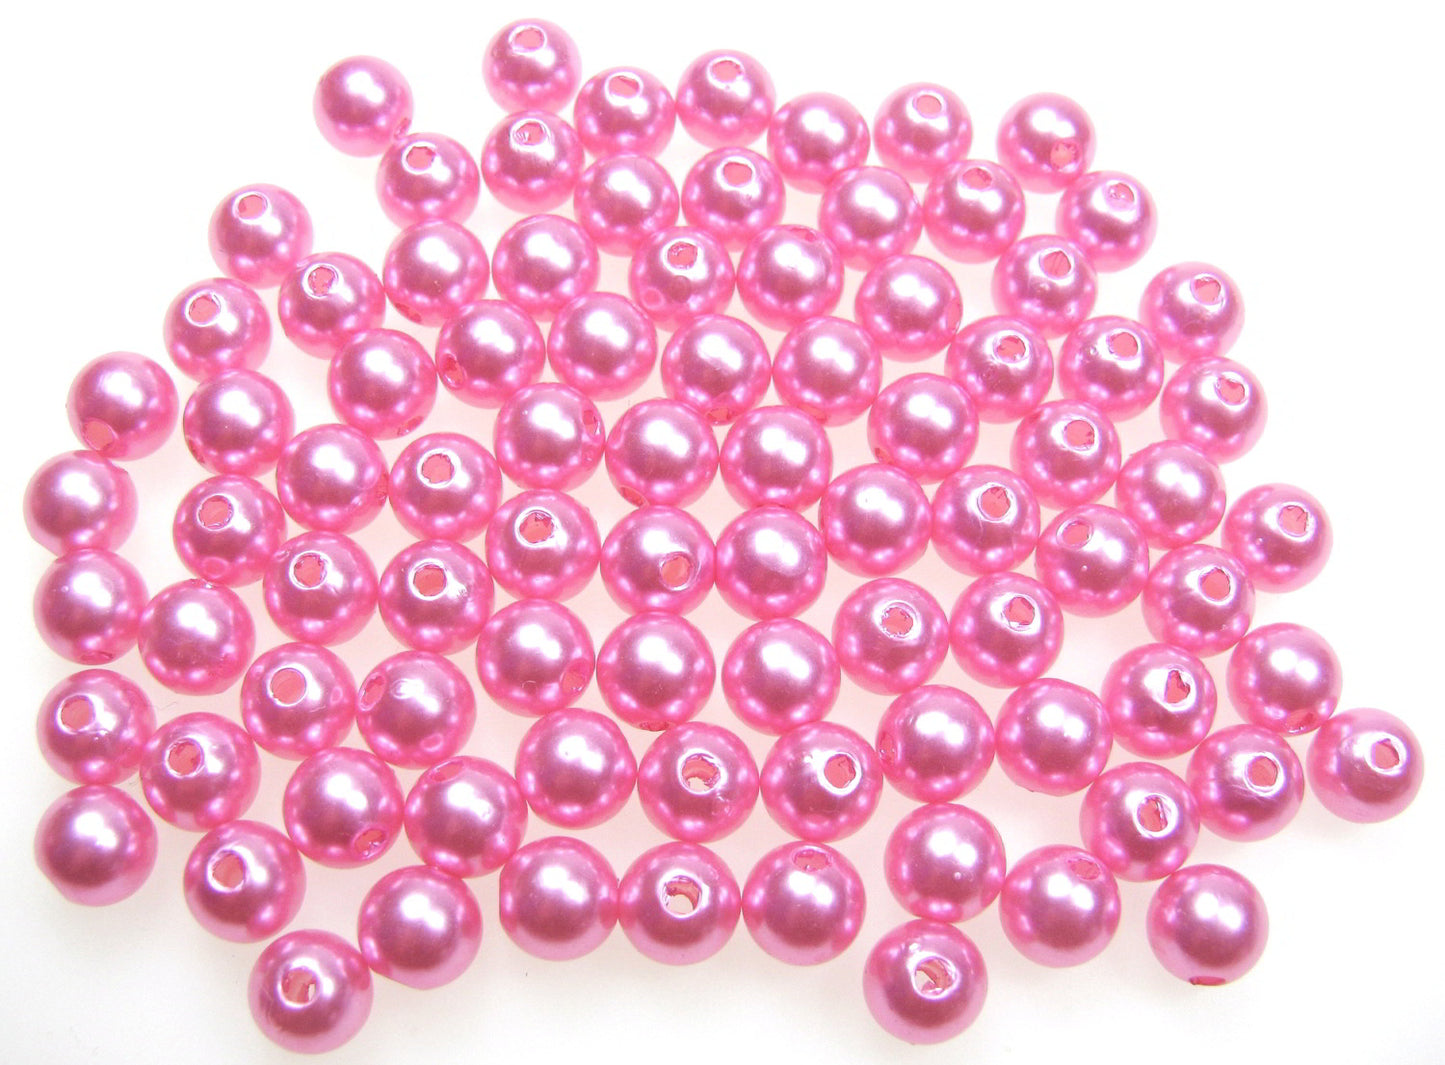 80 Wachsperlen rosa, 8mm, Schmuckzubehör, Kunststoffperlen schimmernd, basteln